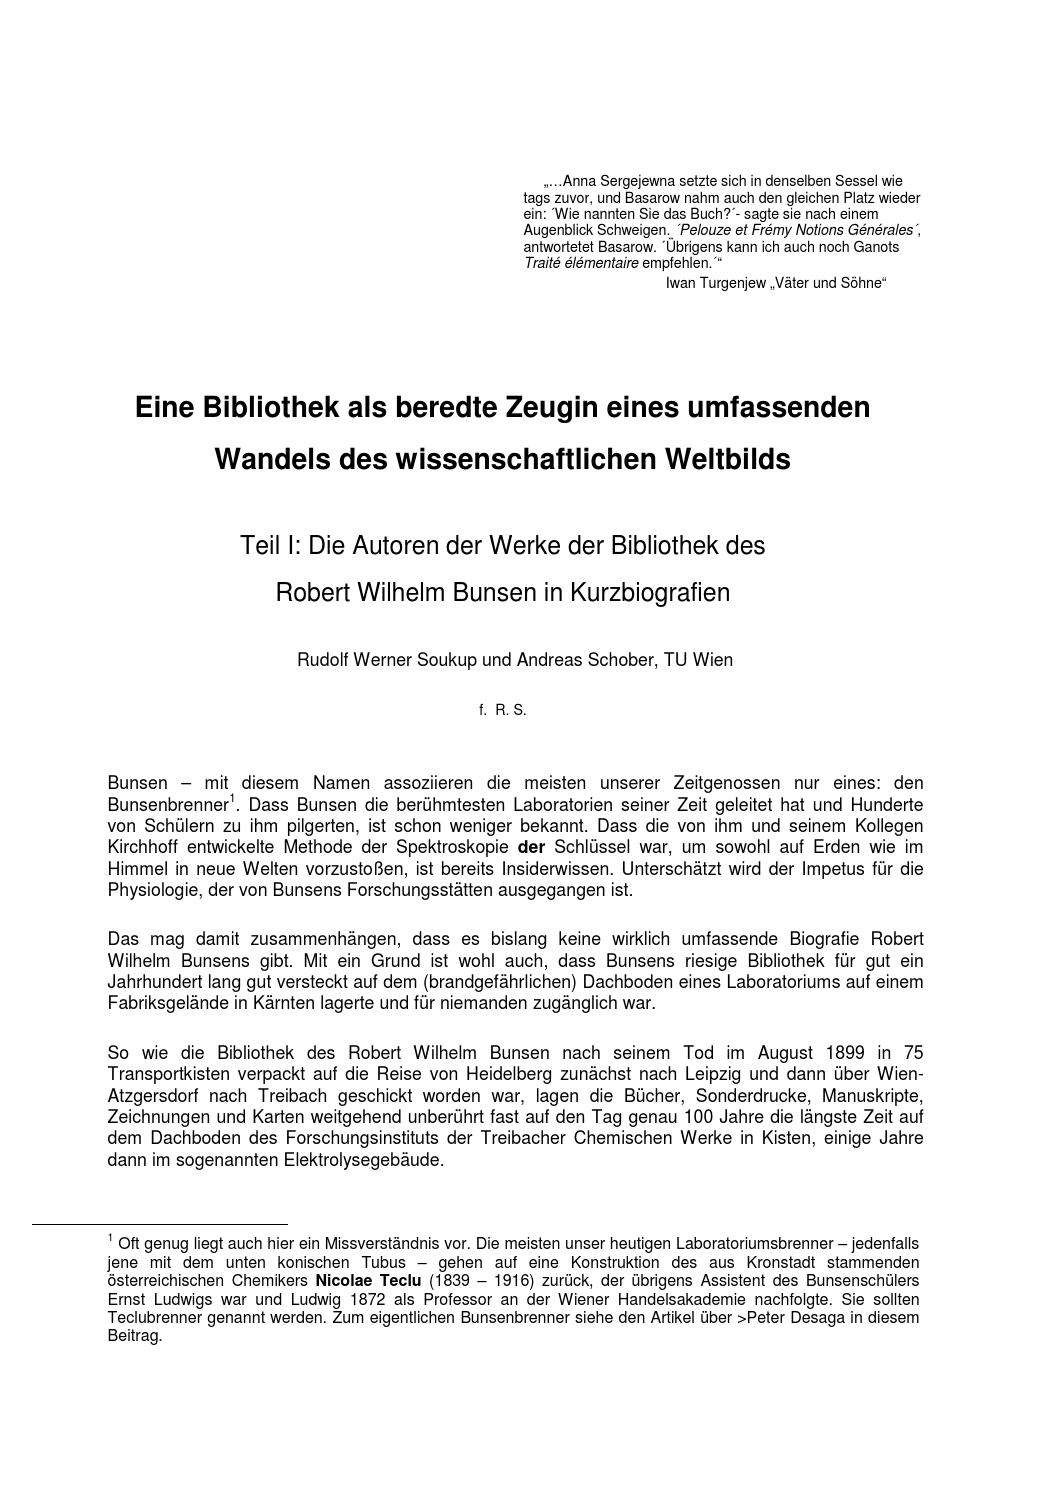 Bad Langensalza Japanischer Garten Neu Autoren Der Bunsenbibliothek Teil 1 by Auer Von Welsbach